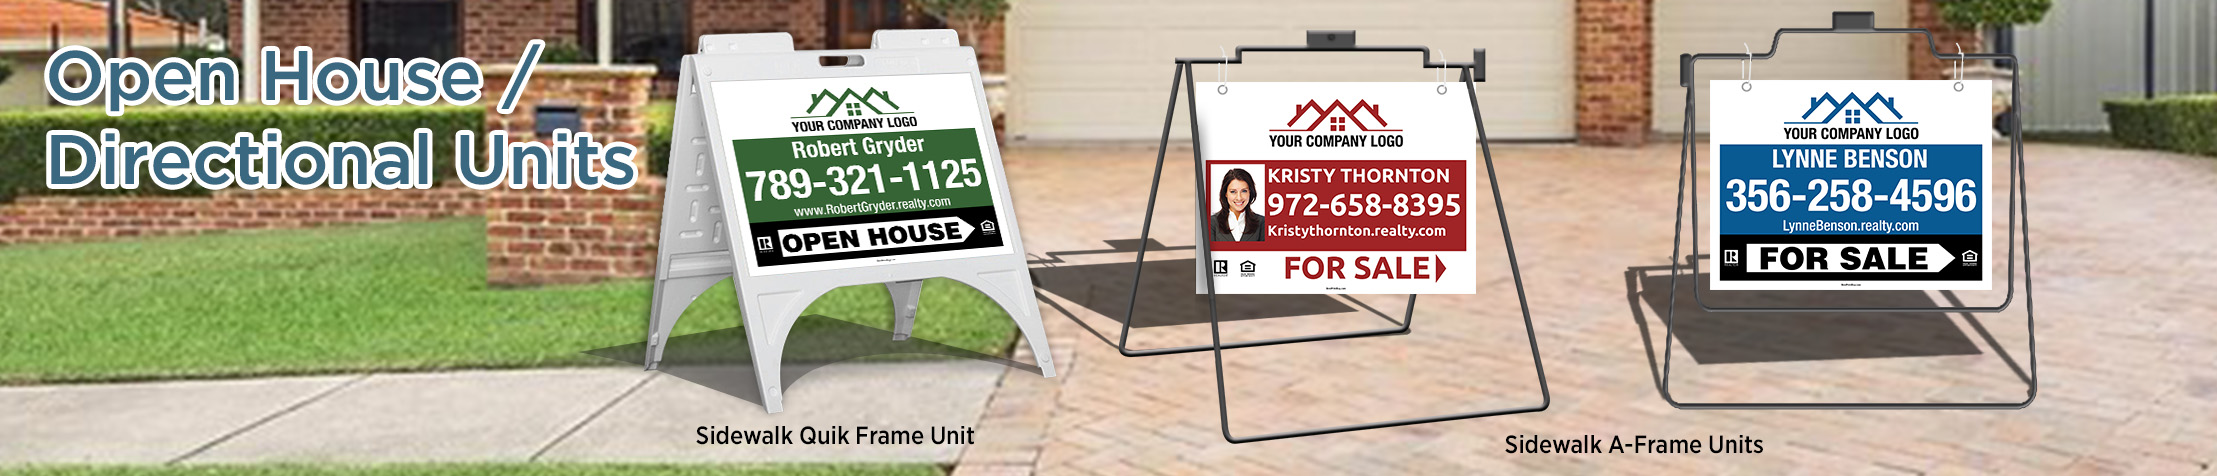 Independent Realtor Real Estate Open House/Directional Units - real estate Sidewalk A-Frame signs | BestPrintBuy.com